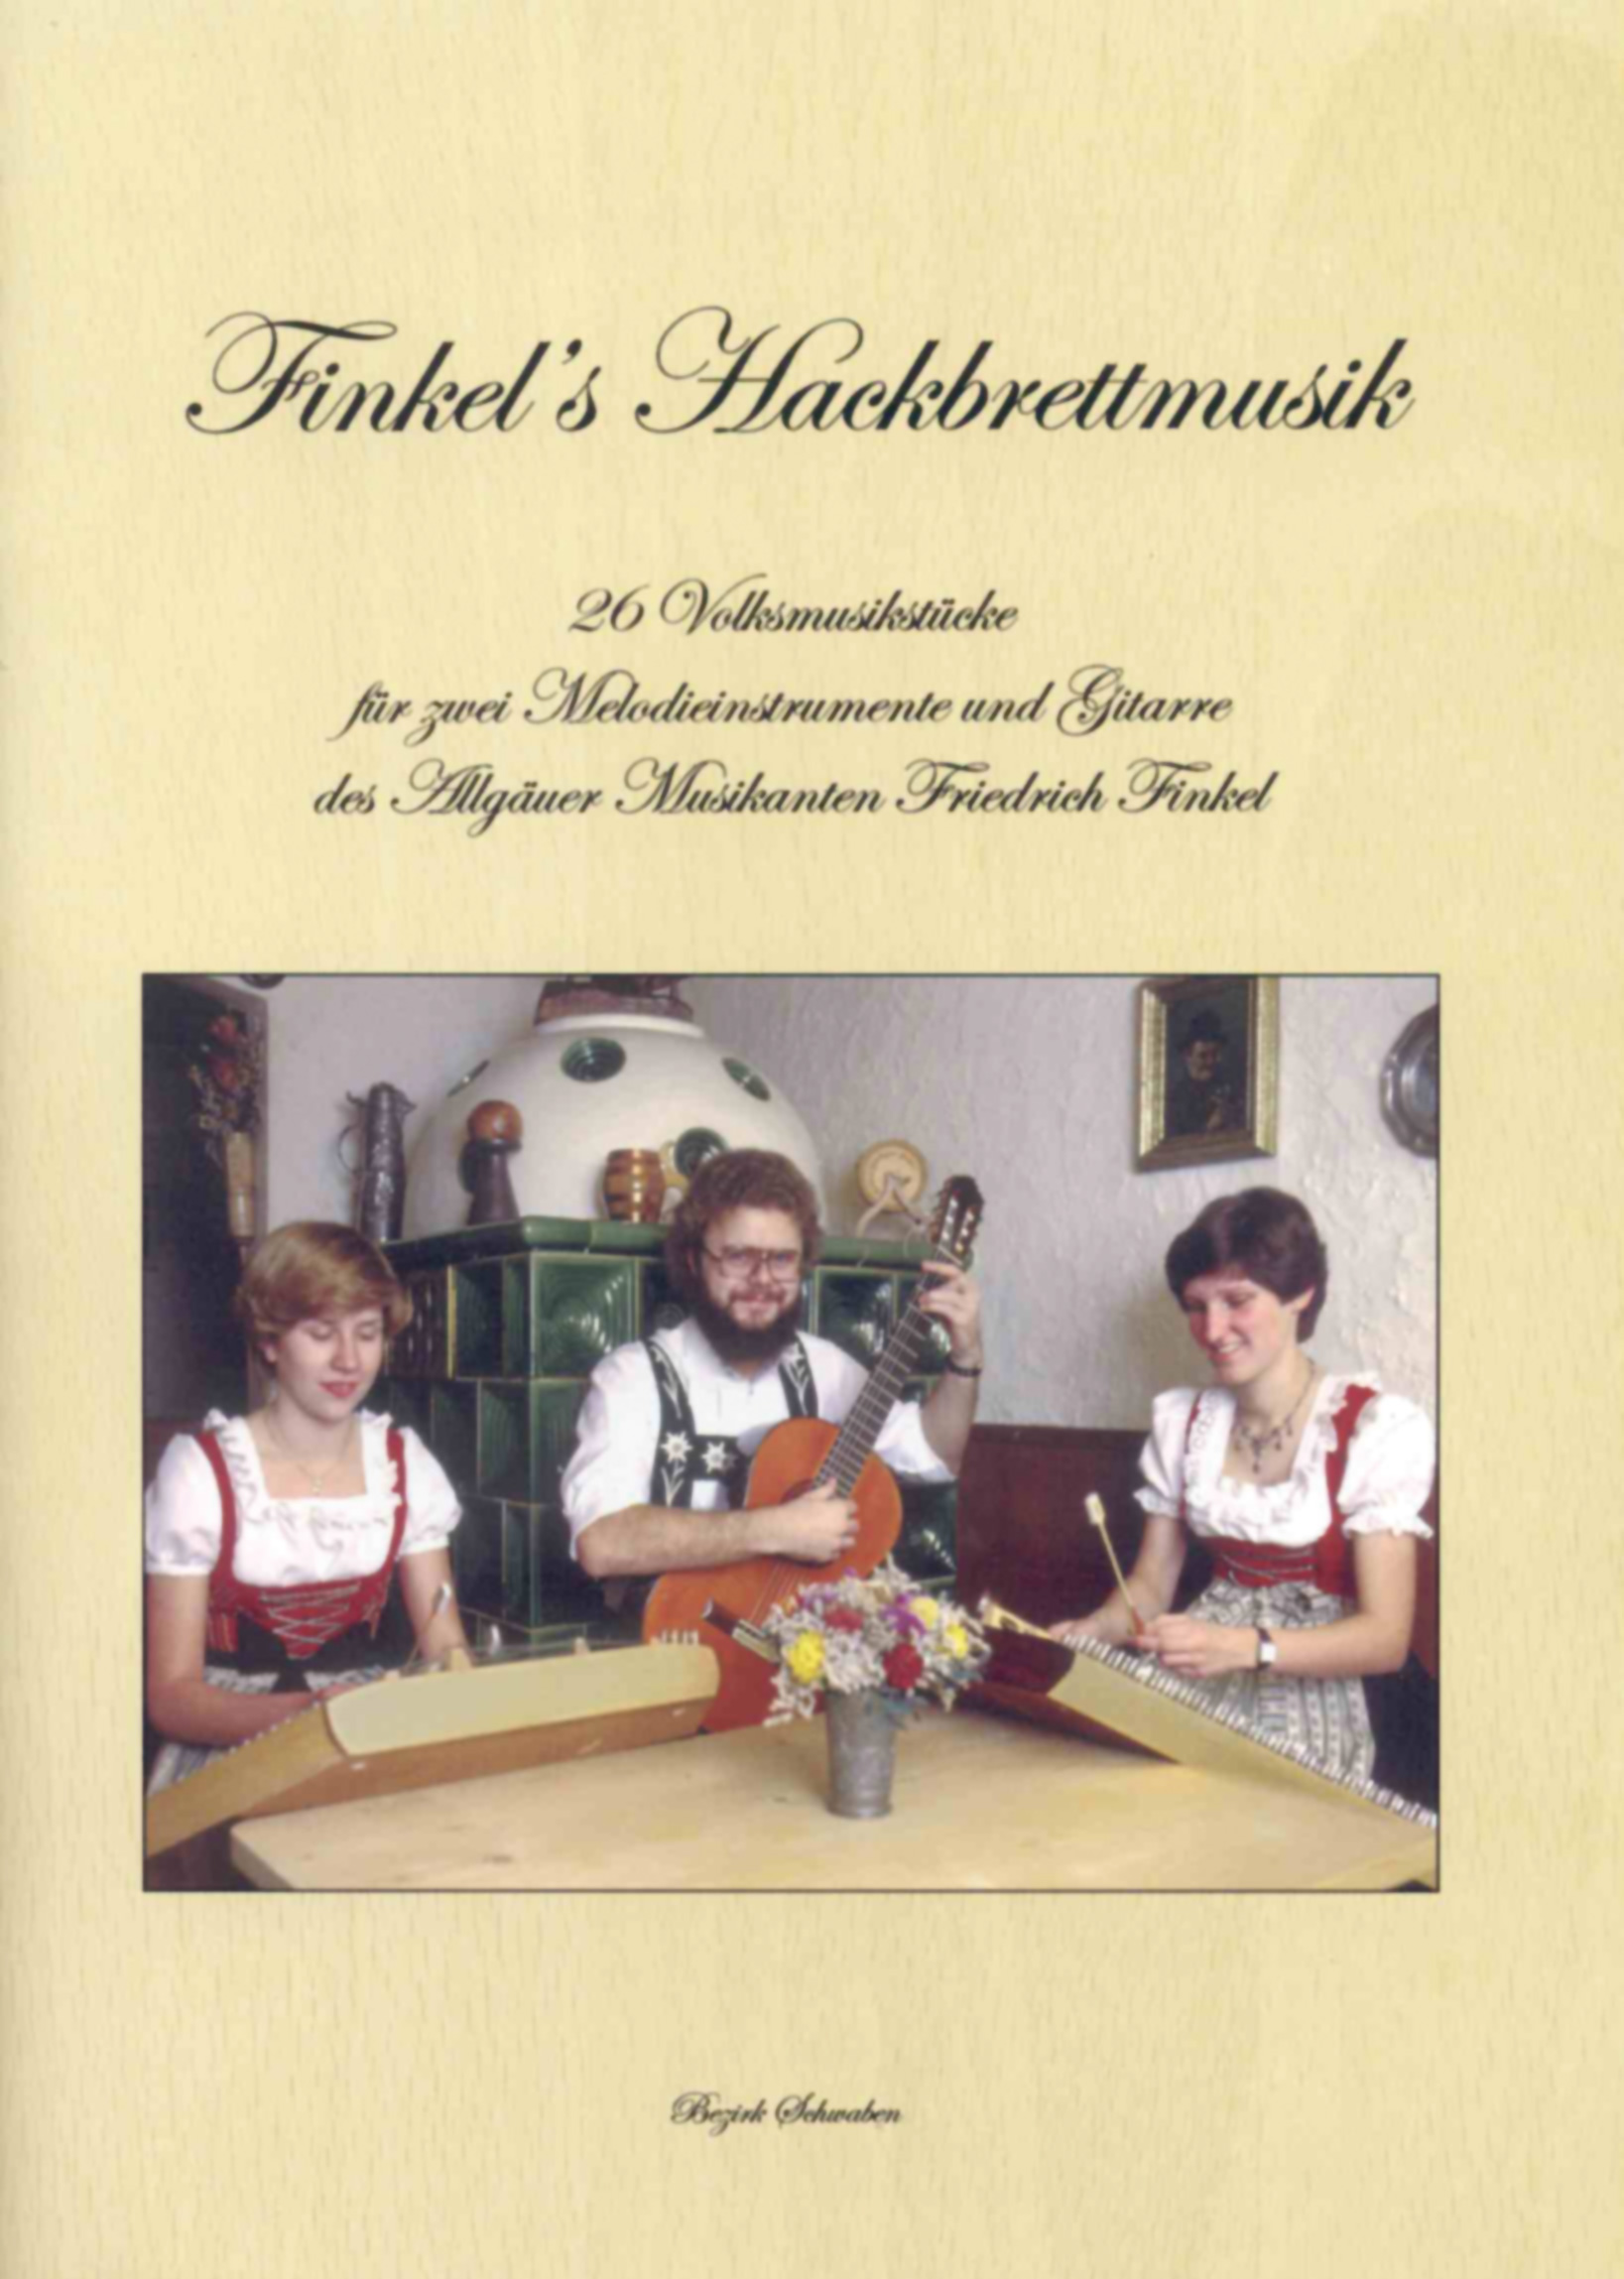 Finkel's Hackbrettmusik